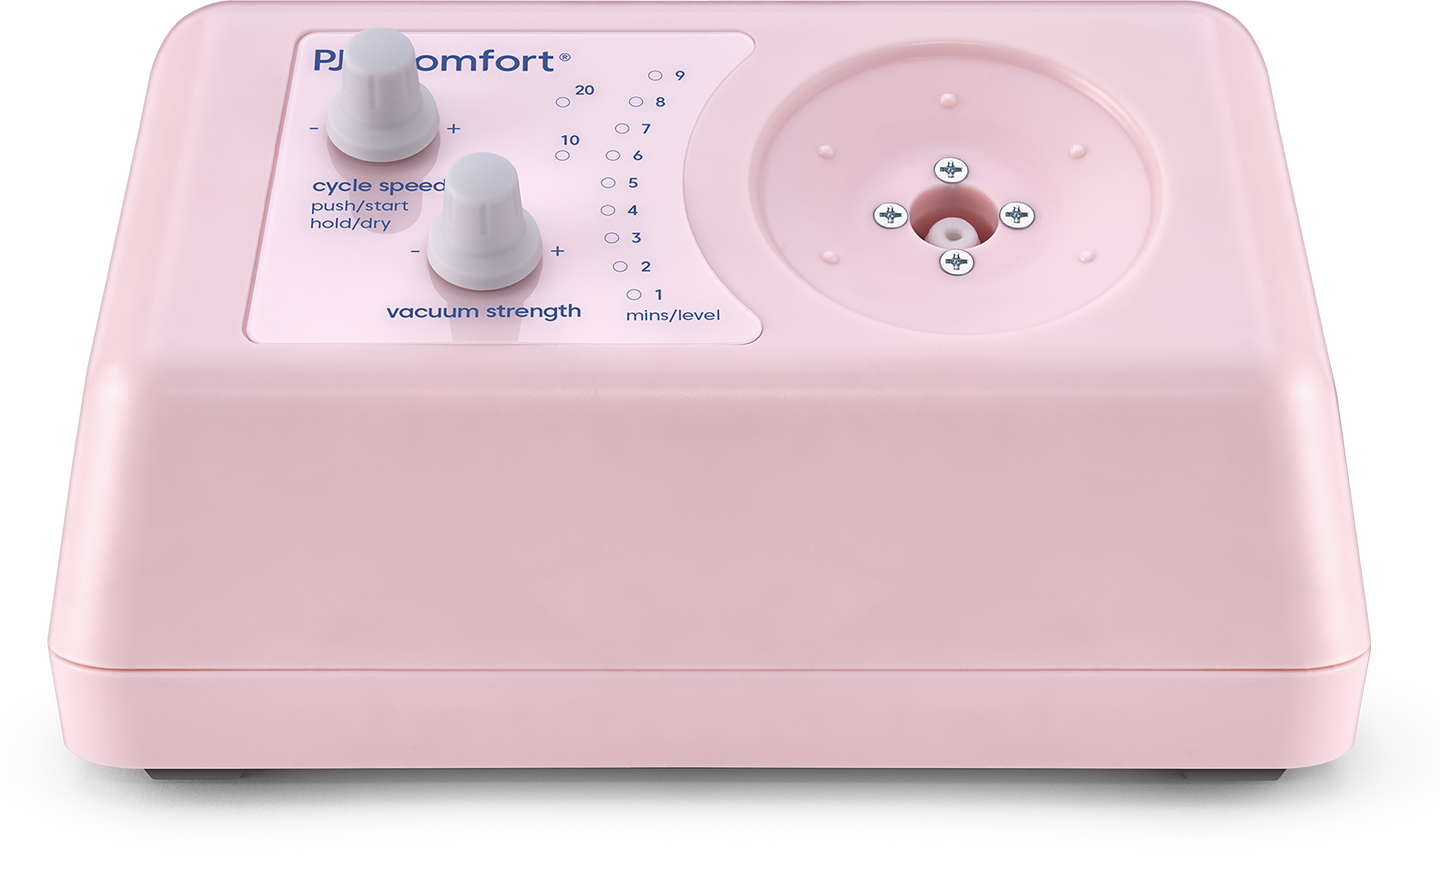 PJ's Comfort – Essential